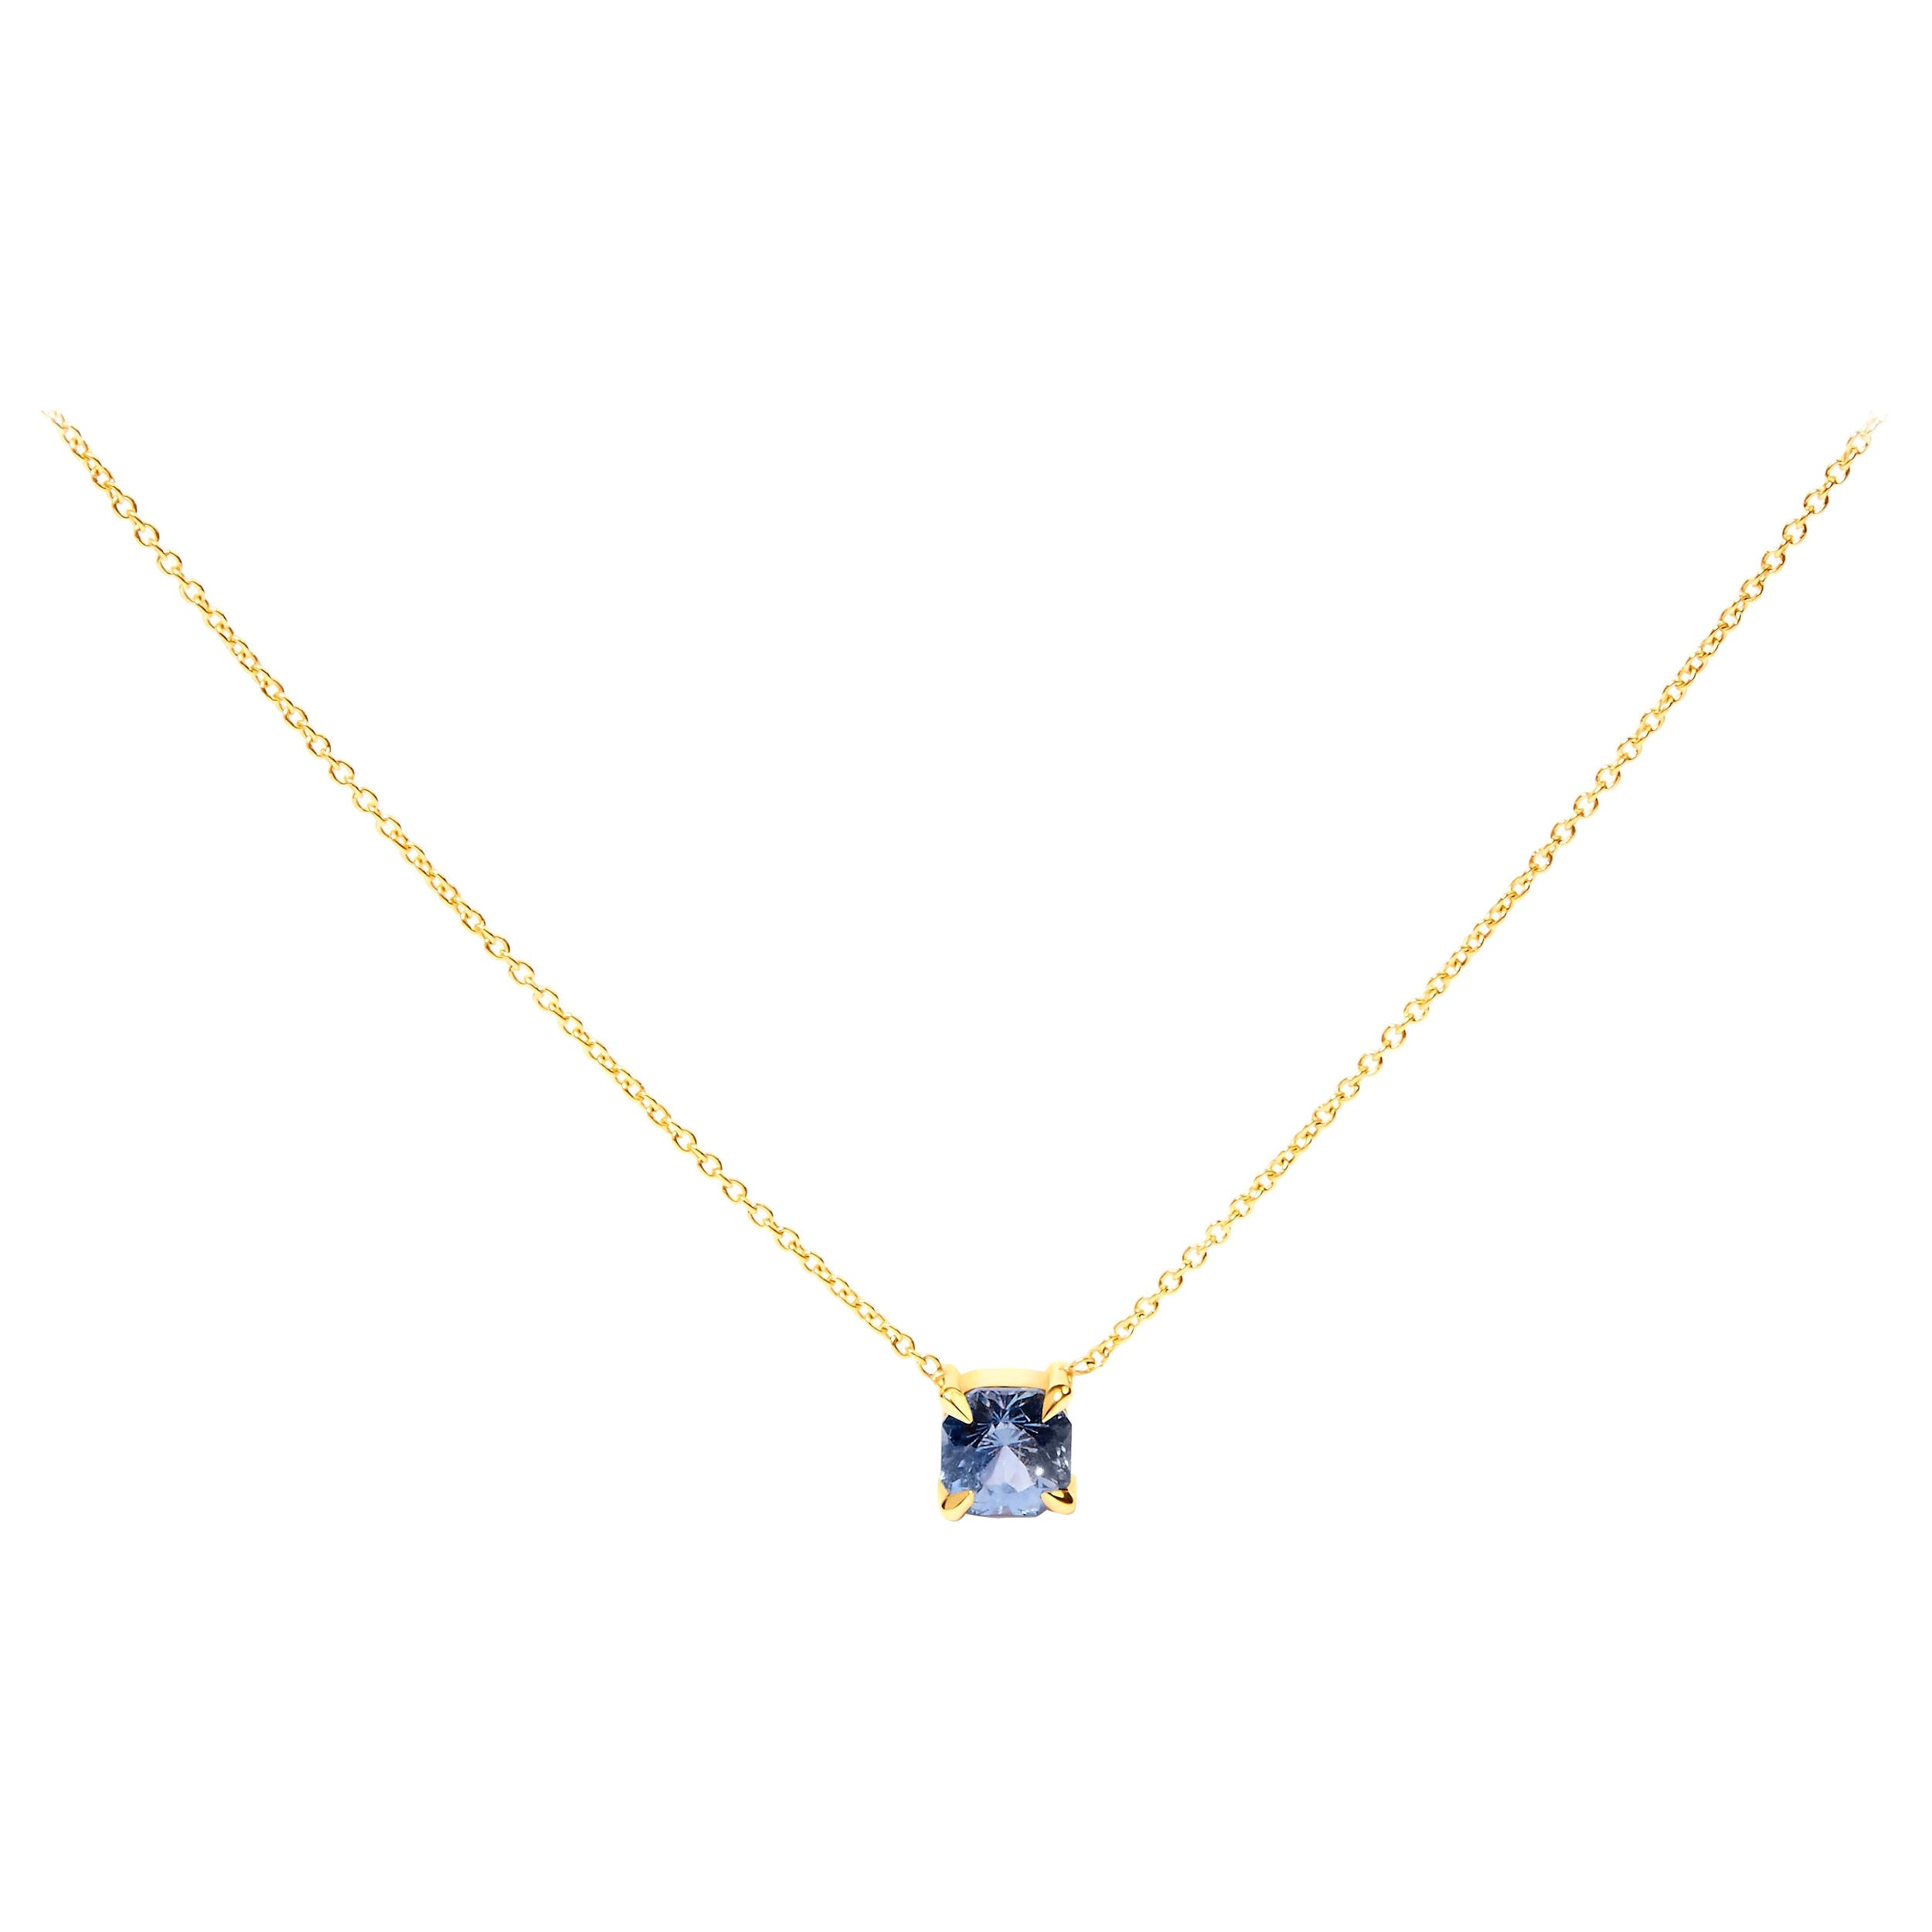 Collier solitaire en or jaune 14 carats avec saphir bleu taille coussin de 4/5 carats